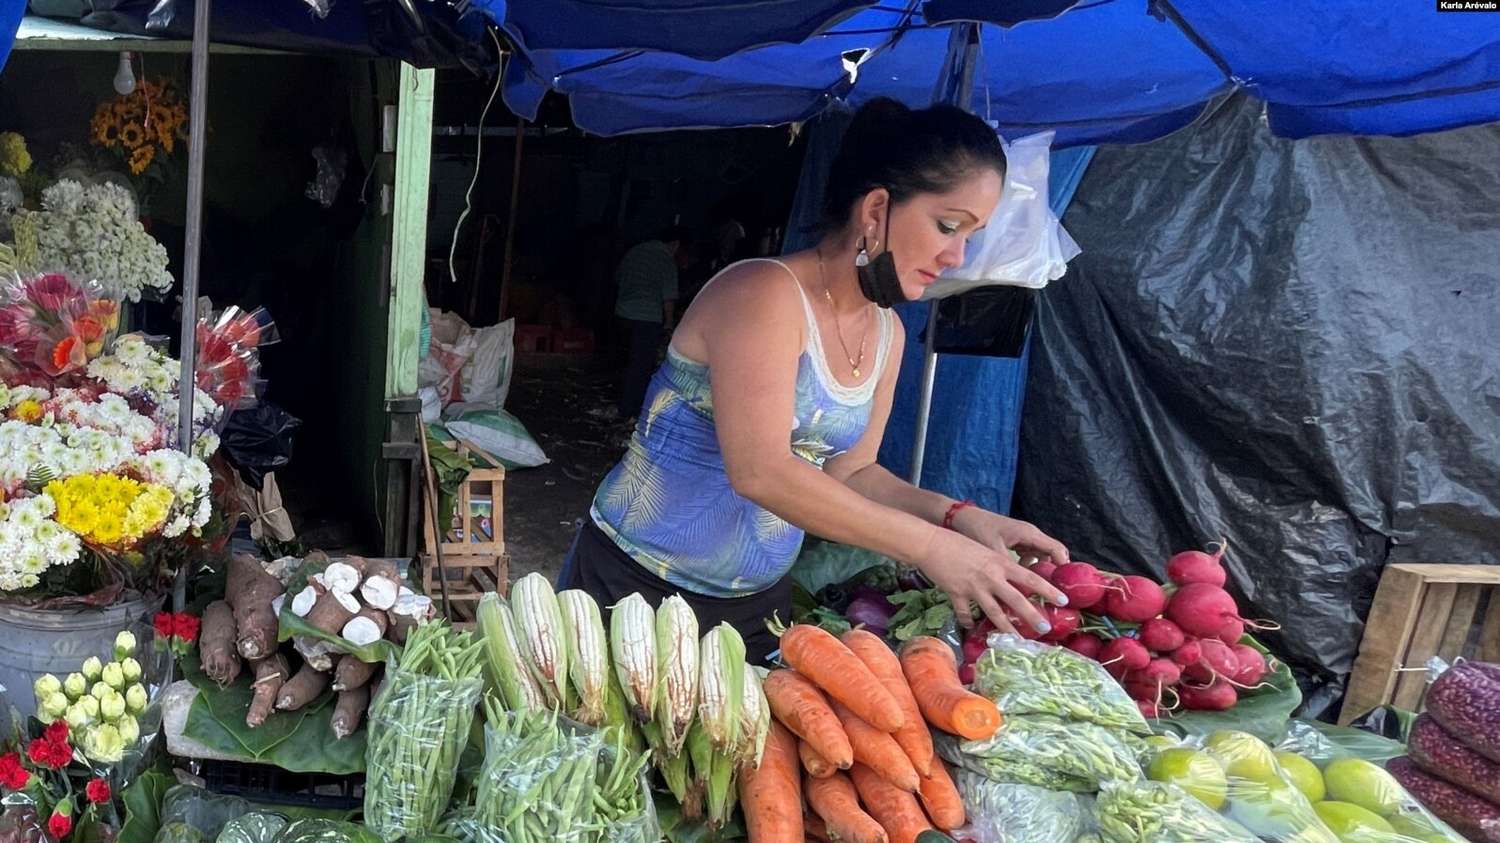 La inflación se cierne sobre los pobres en Latinoamérica, según informe del Banco Mundial